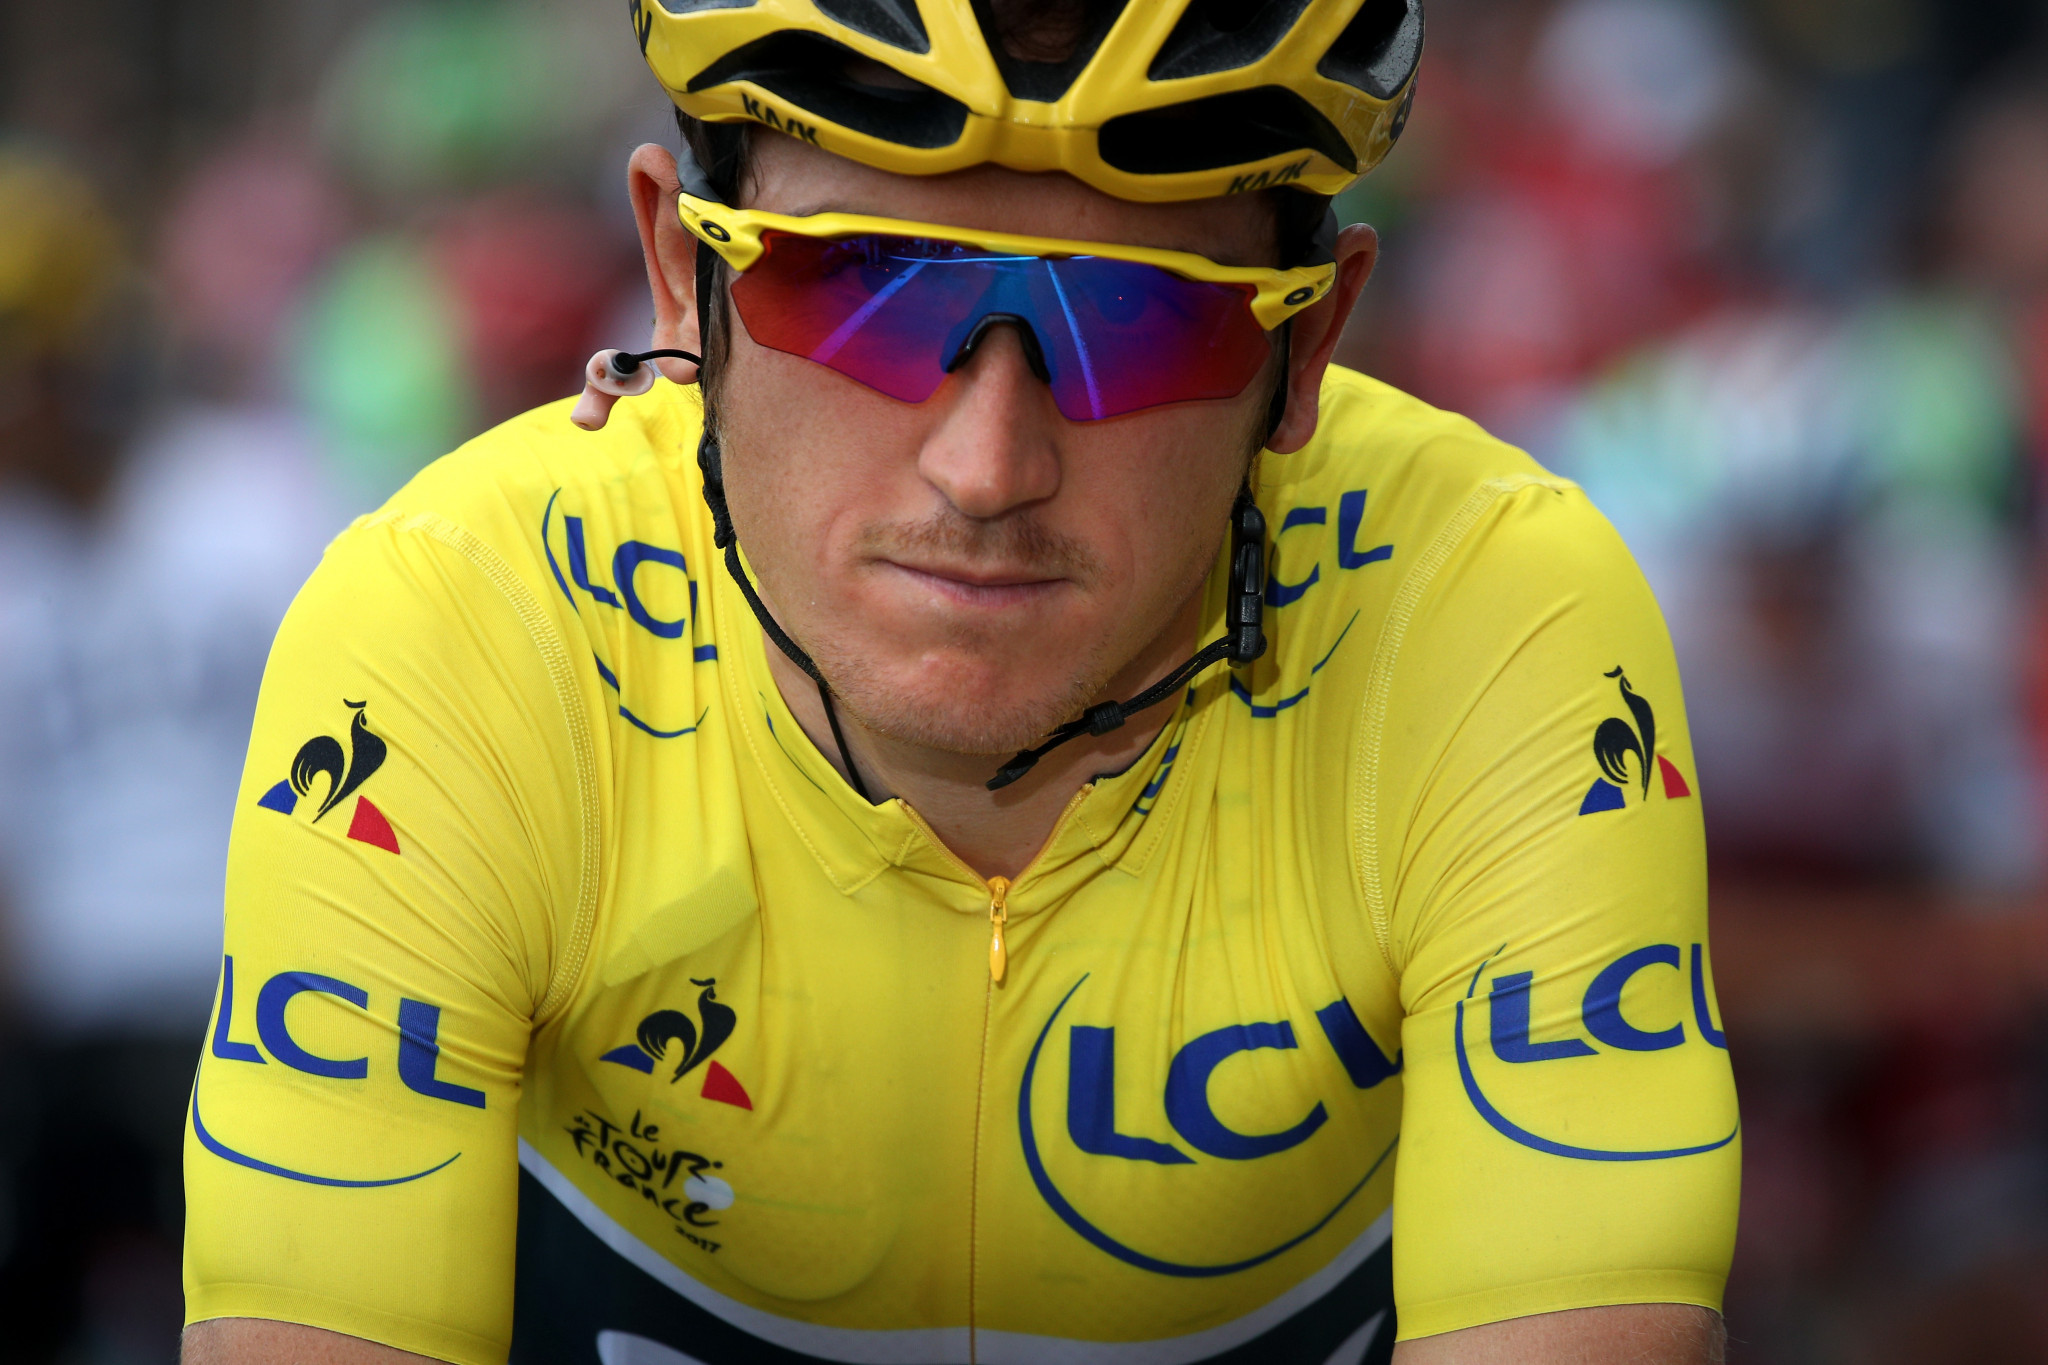 Geraint Thomas won the Tour de Suisse in stylish fashion ©Getty Images